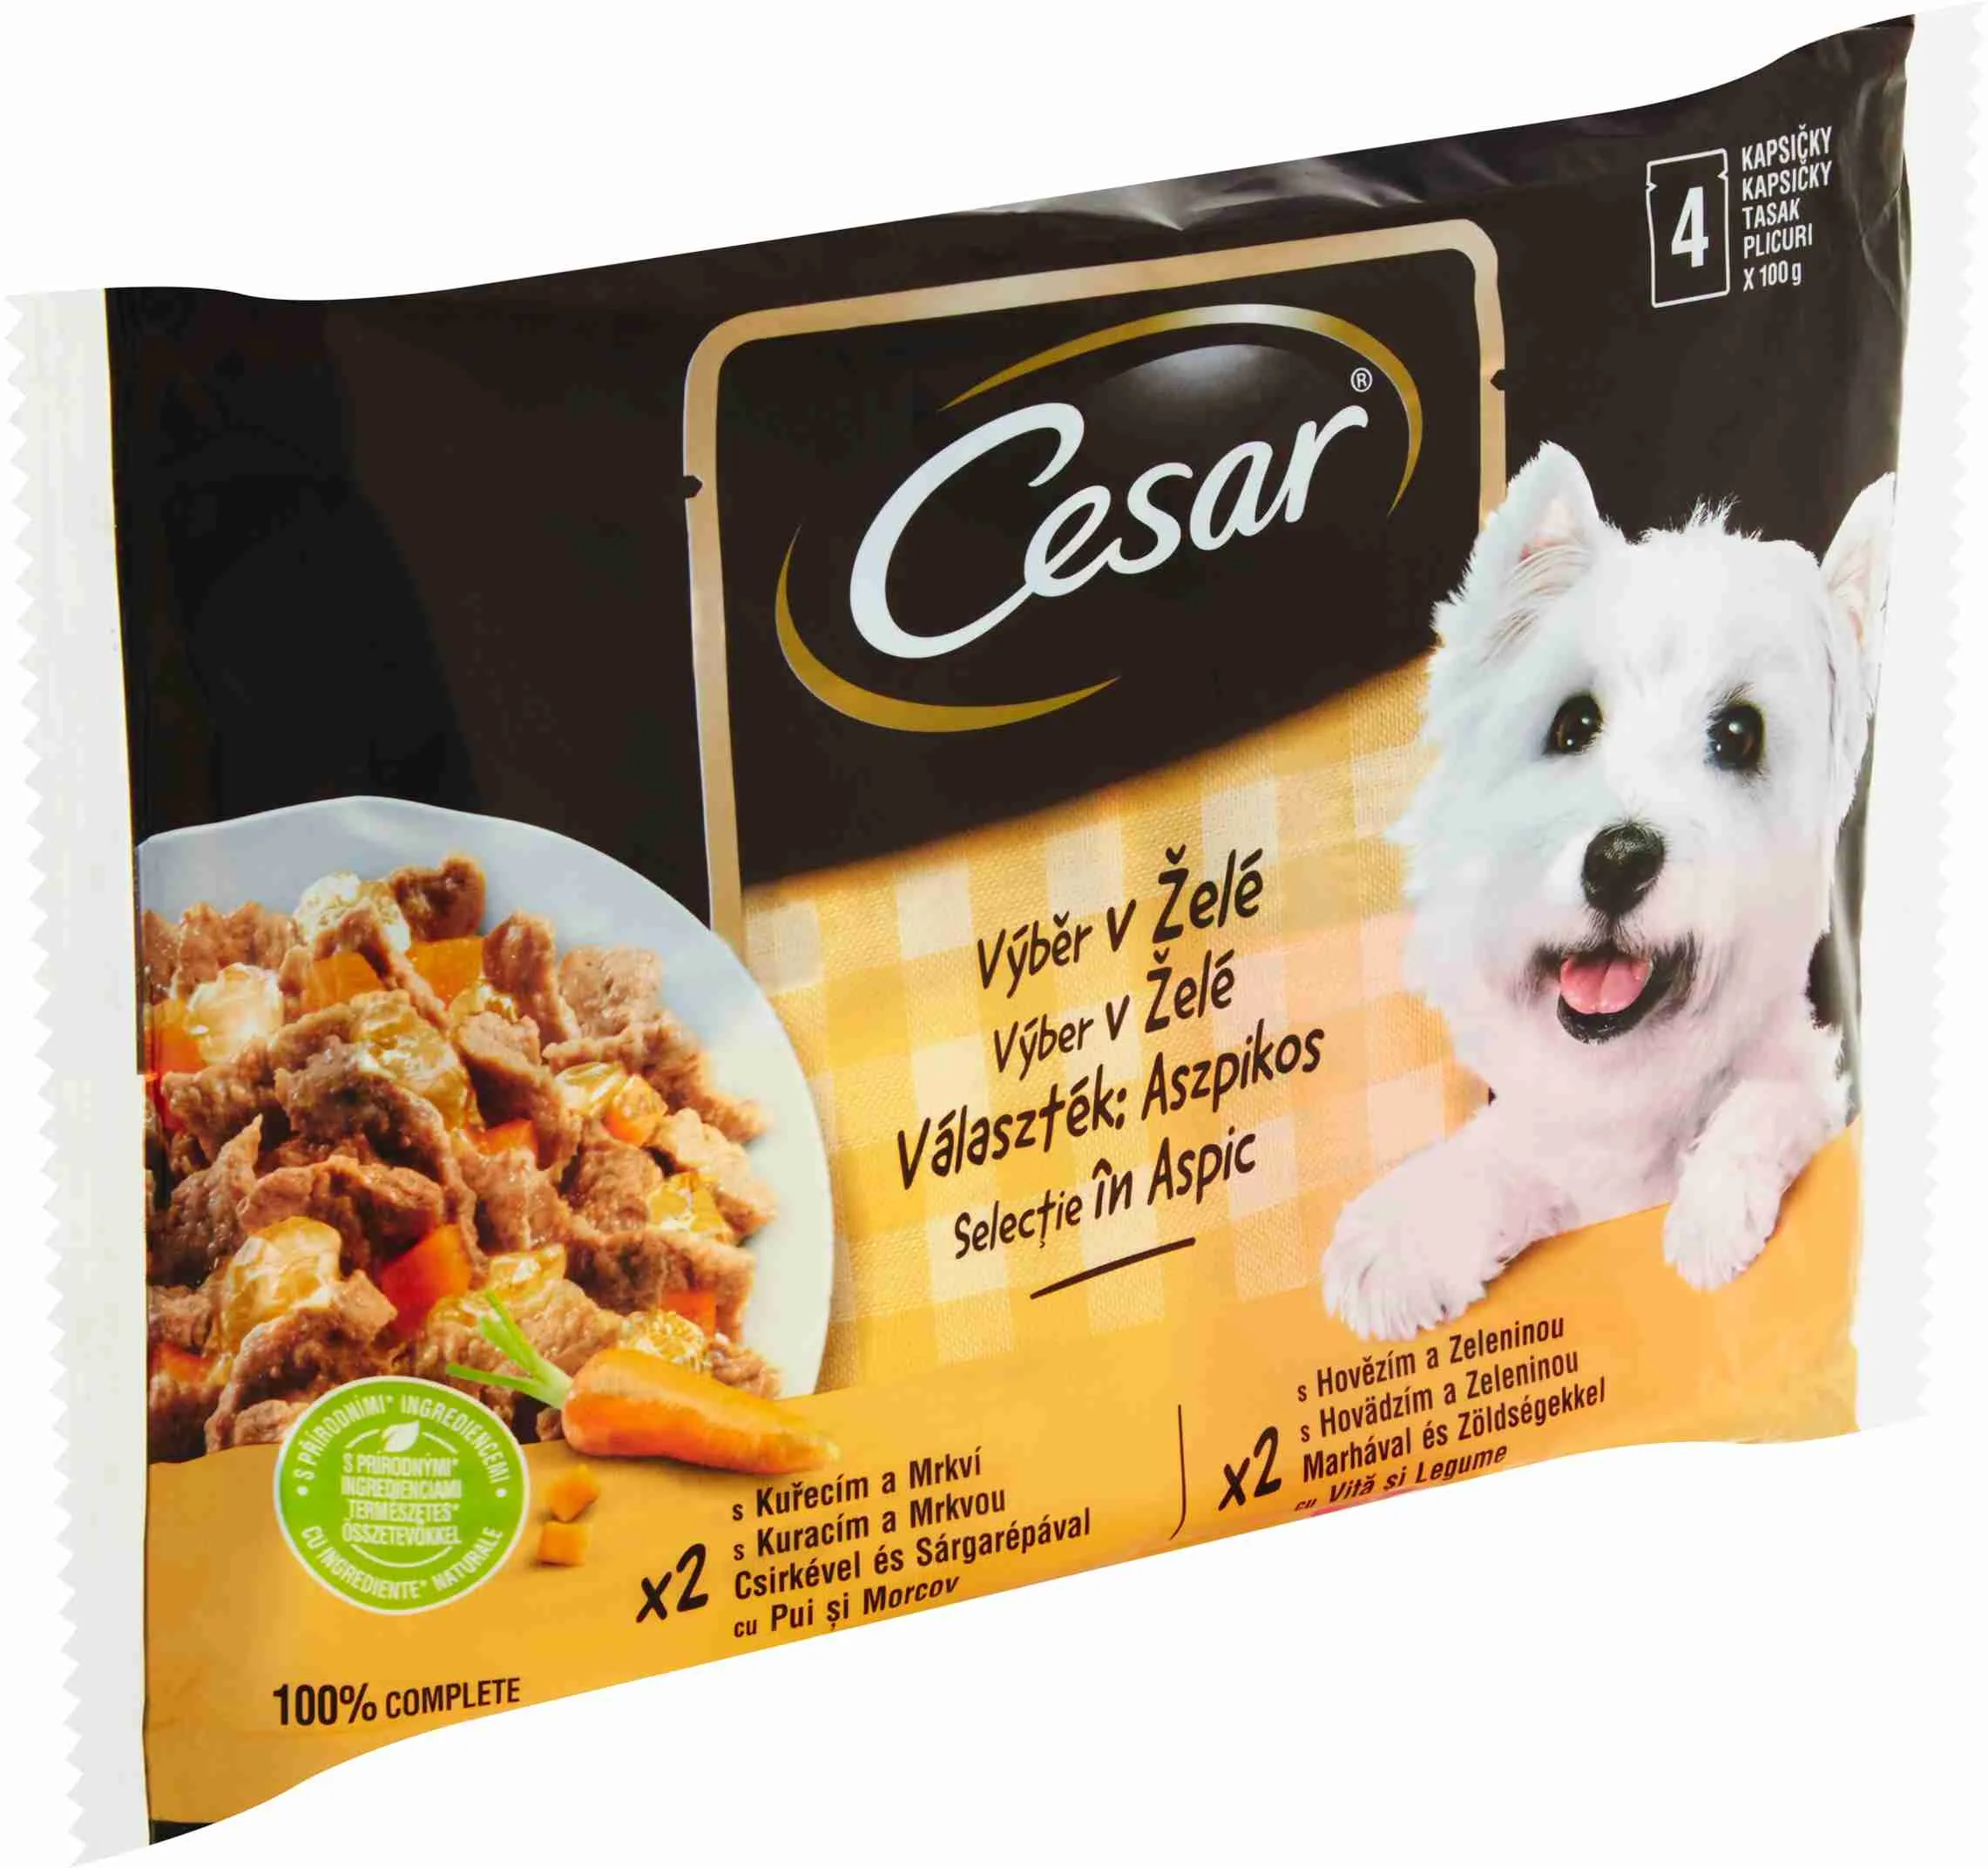 Cesar Kapsička Selection v Želé 4×100g 4×100 g, kompletné vlhké krmivo pre dospelé psy